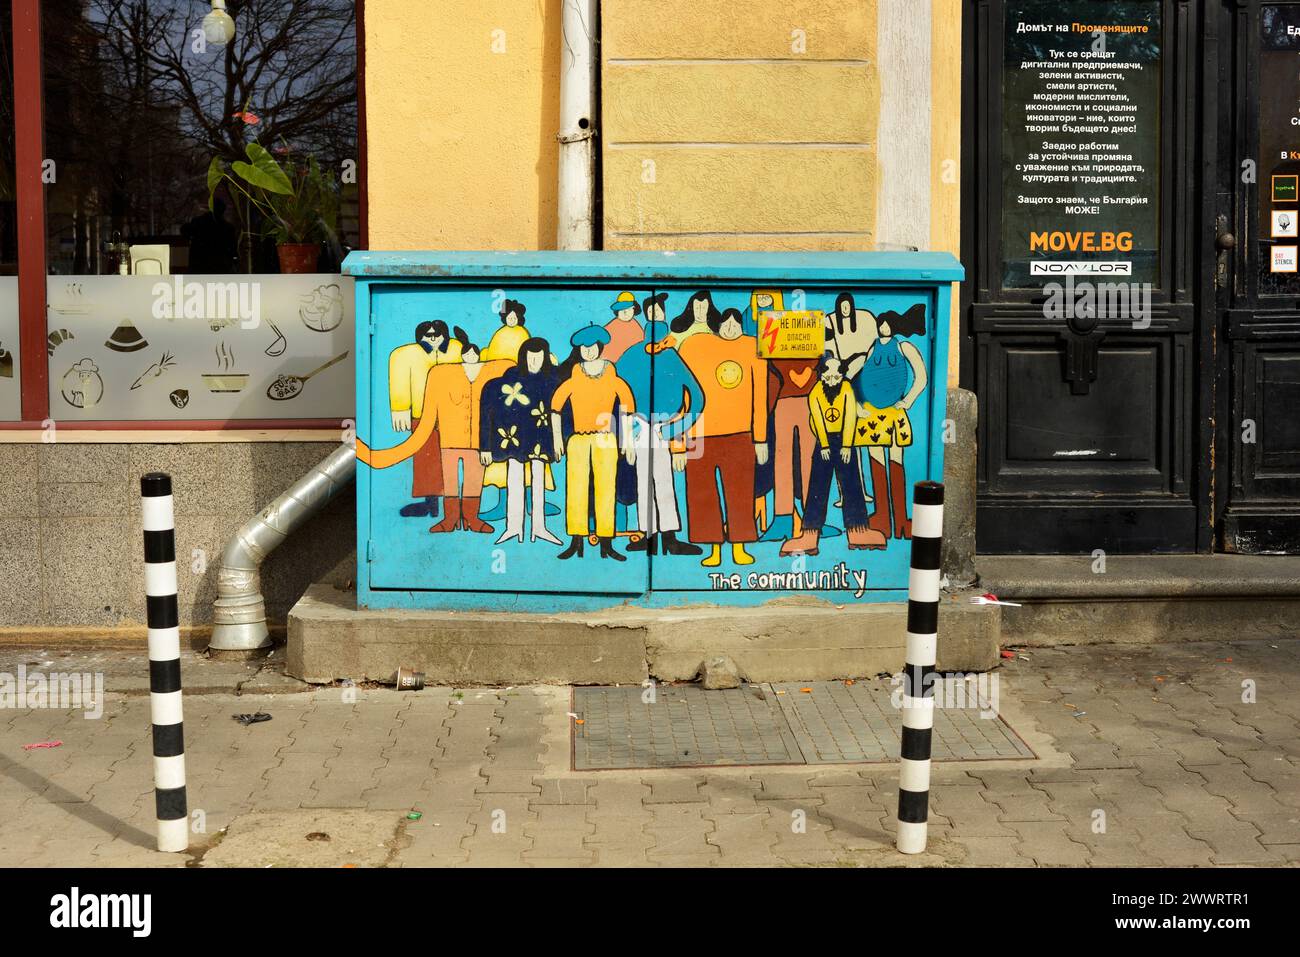 Street Art Graffiti farbenfrohes Gemälde von Menschen mit Text die Gemeinschaft auf Straßenschaltschrank in Sofia, Bulgarien, Osteuropa, Balkan, EU Stockfoto